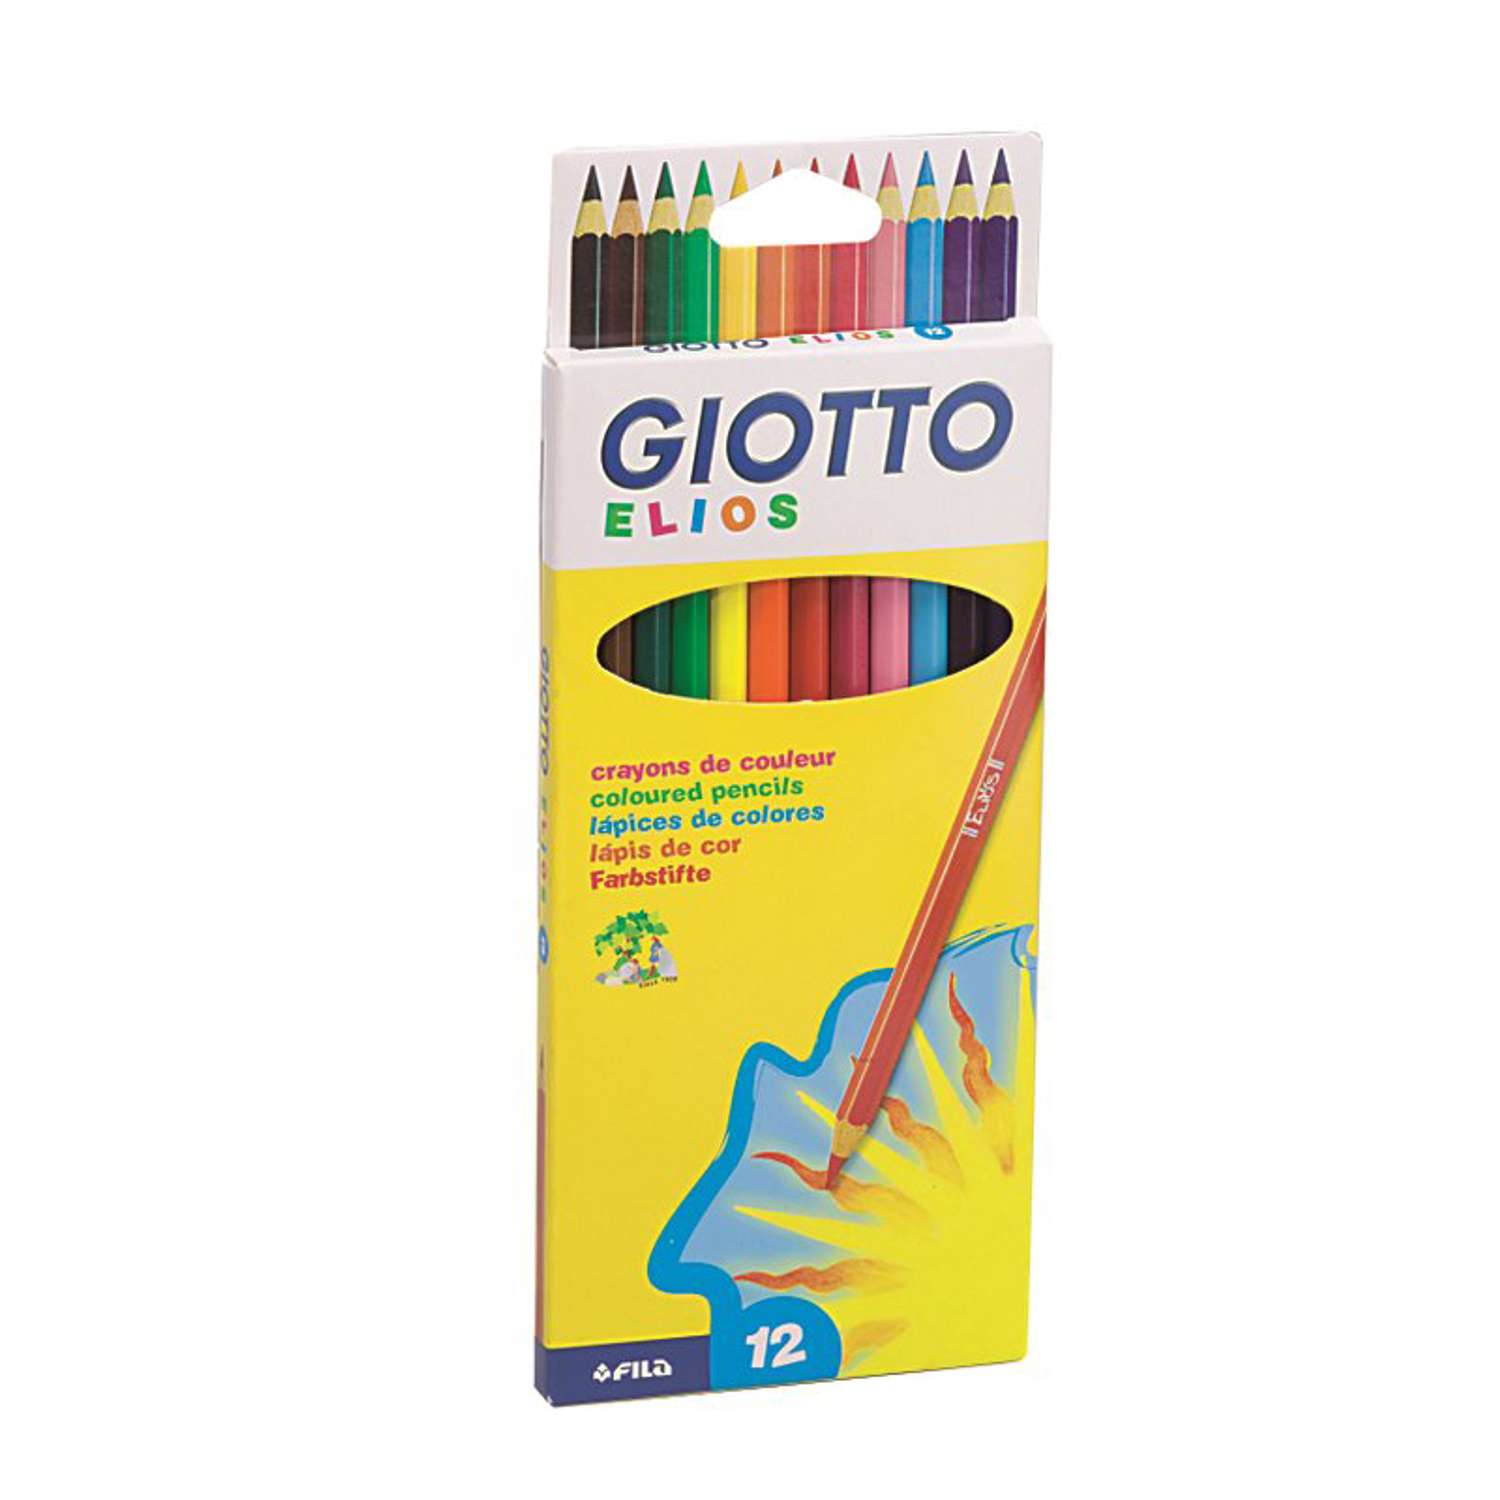 Цветные карандаши GIOTTO ELIOS 12 цв. Толщина грифеля 2,8 мм. - фото 1